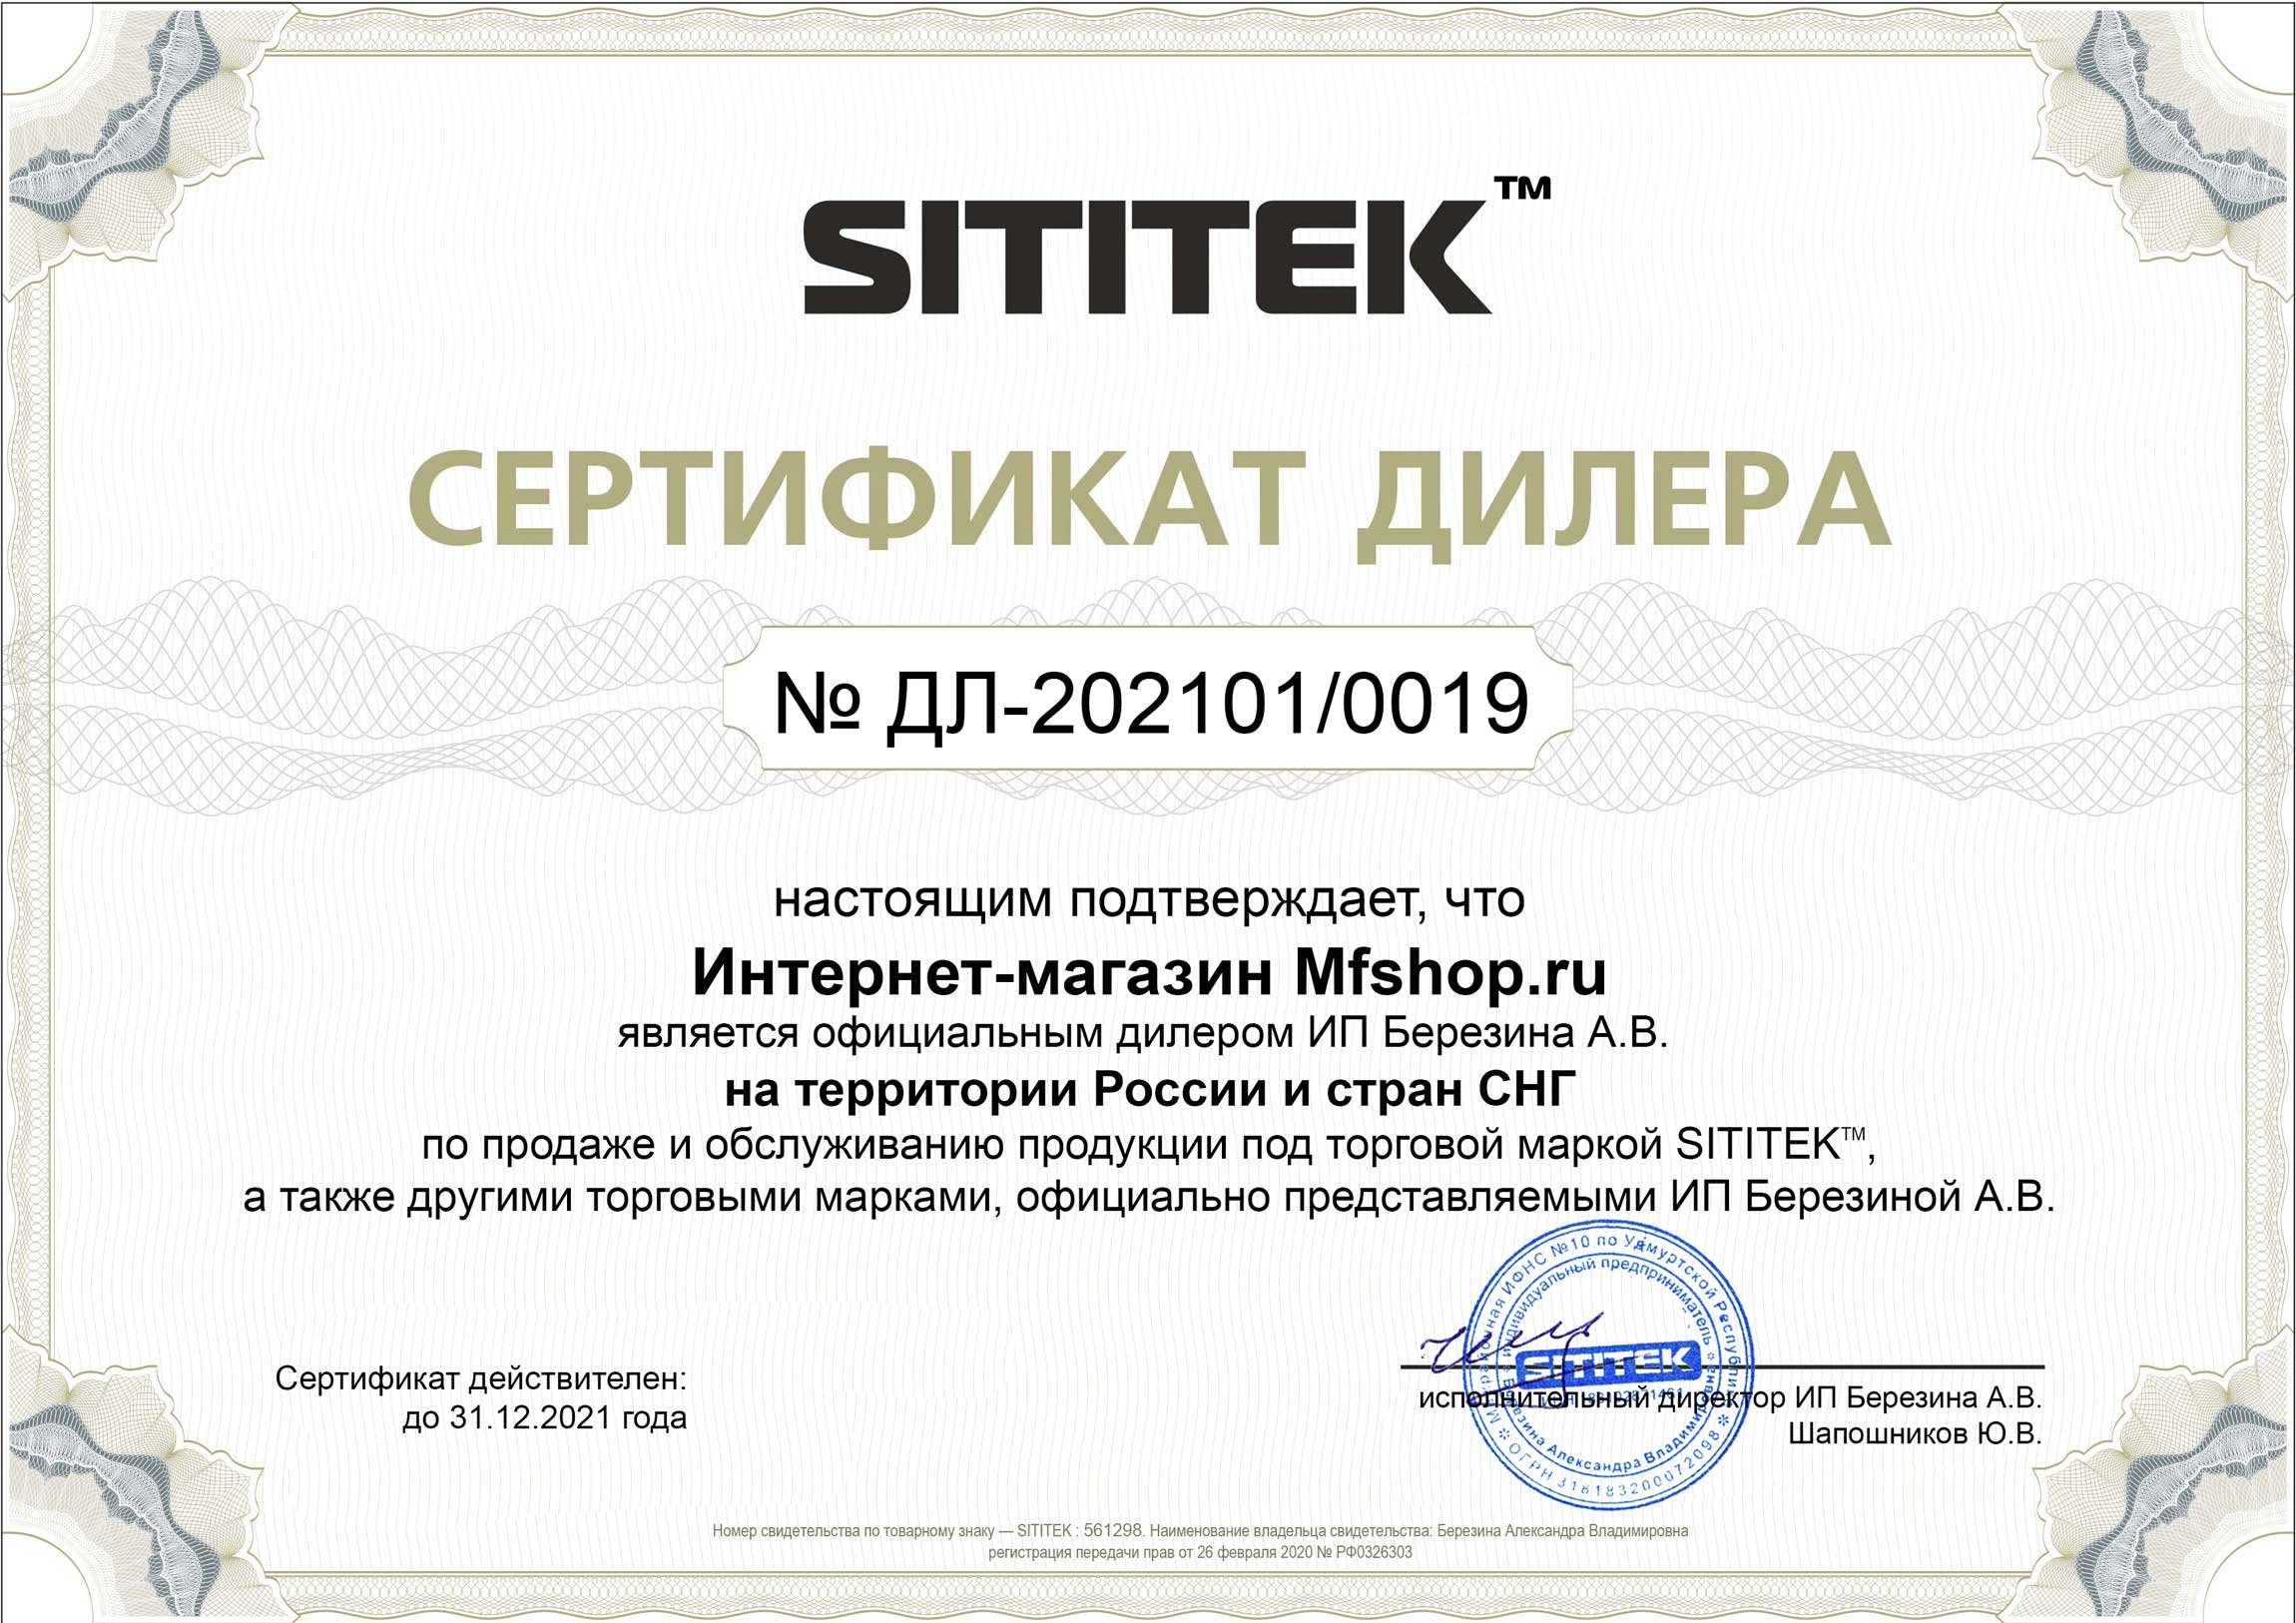 Сертификат дилера на продажу и обслуживание продукции компании SITITEK в России и СНГ